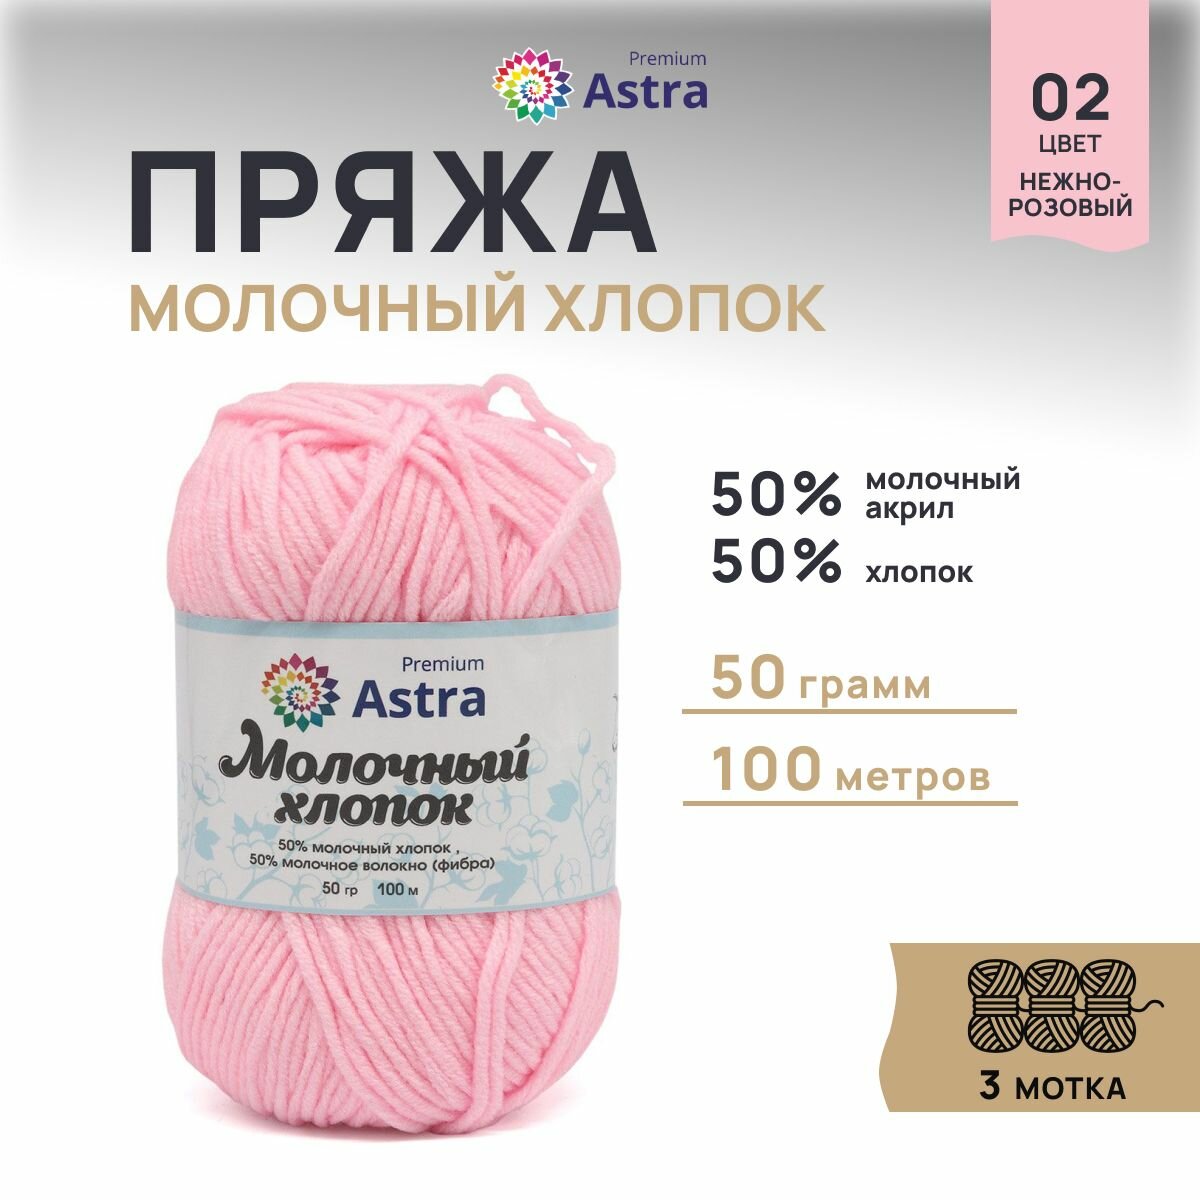 Пряжа для вязания Astra Premium 'Молочный хлопок' (Milk Cotton) 50гр 100м (+/-5%) (50% хлопок, 50% молочный акрил) (02 нежно-розовый), 3 мотка